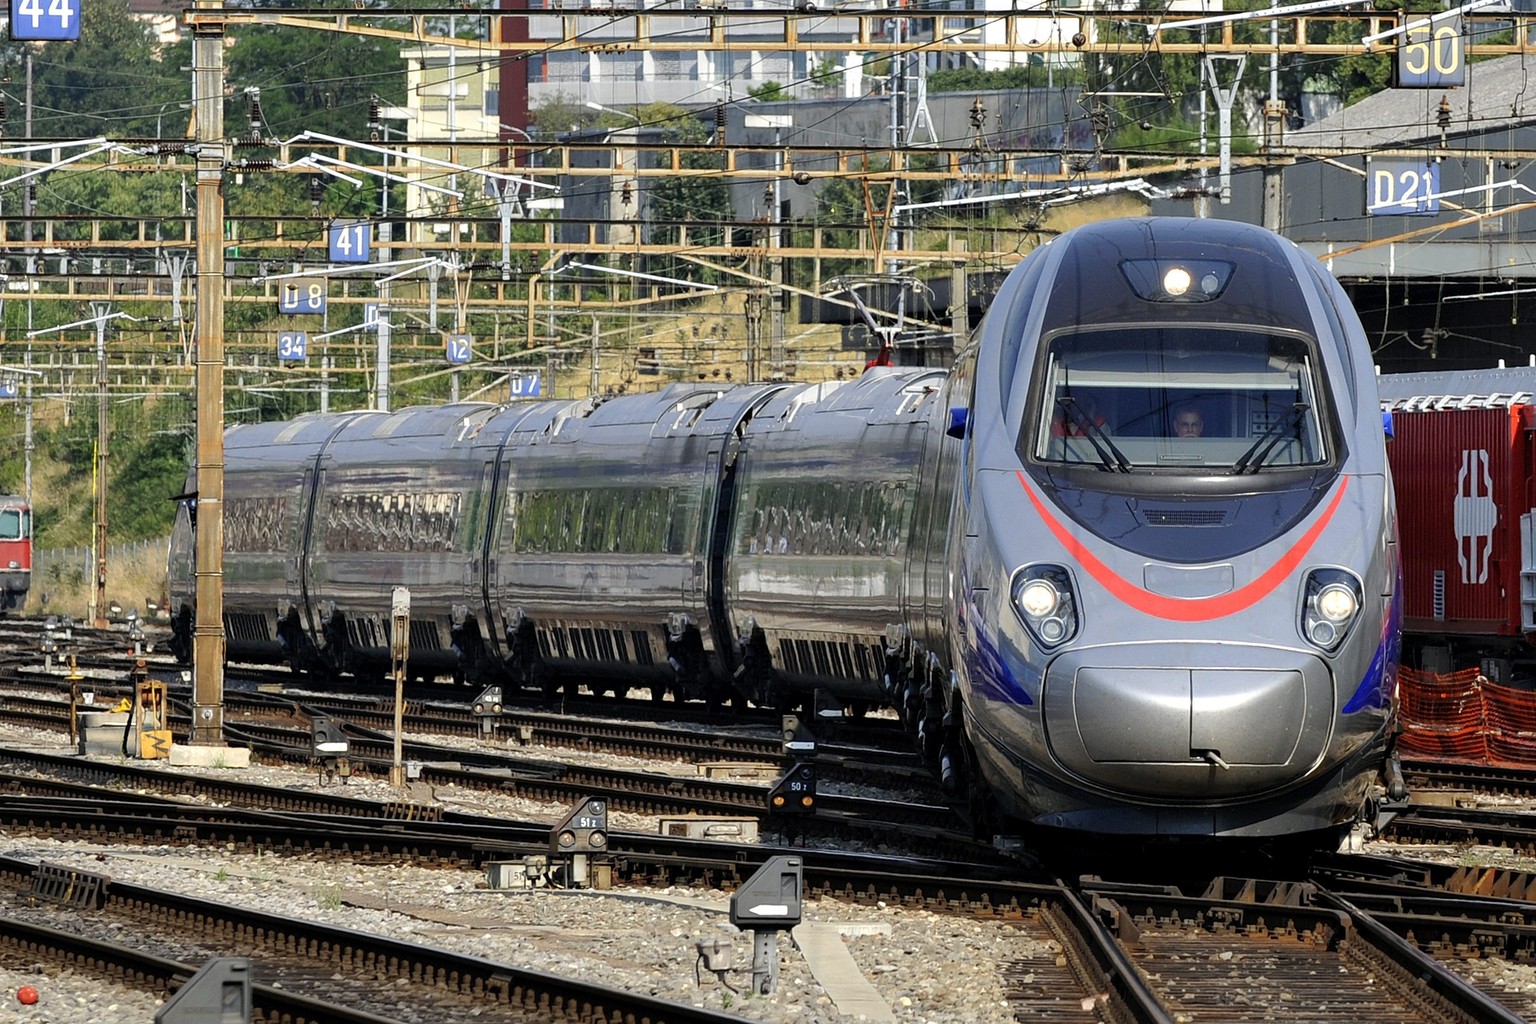 15 neue Züge des Typs ETR 610 fahren ab Fahrplanwechsel in den Süden.